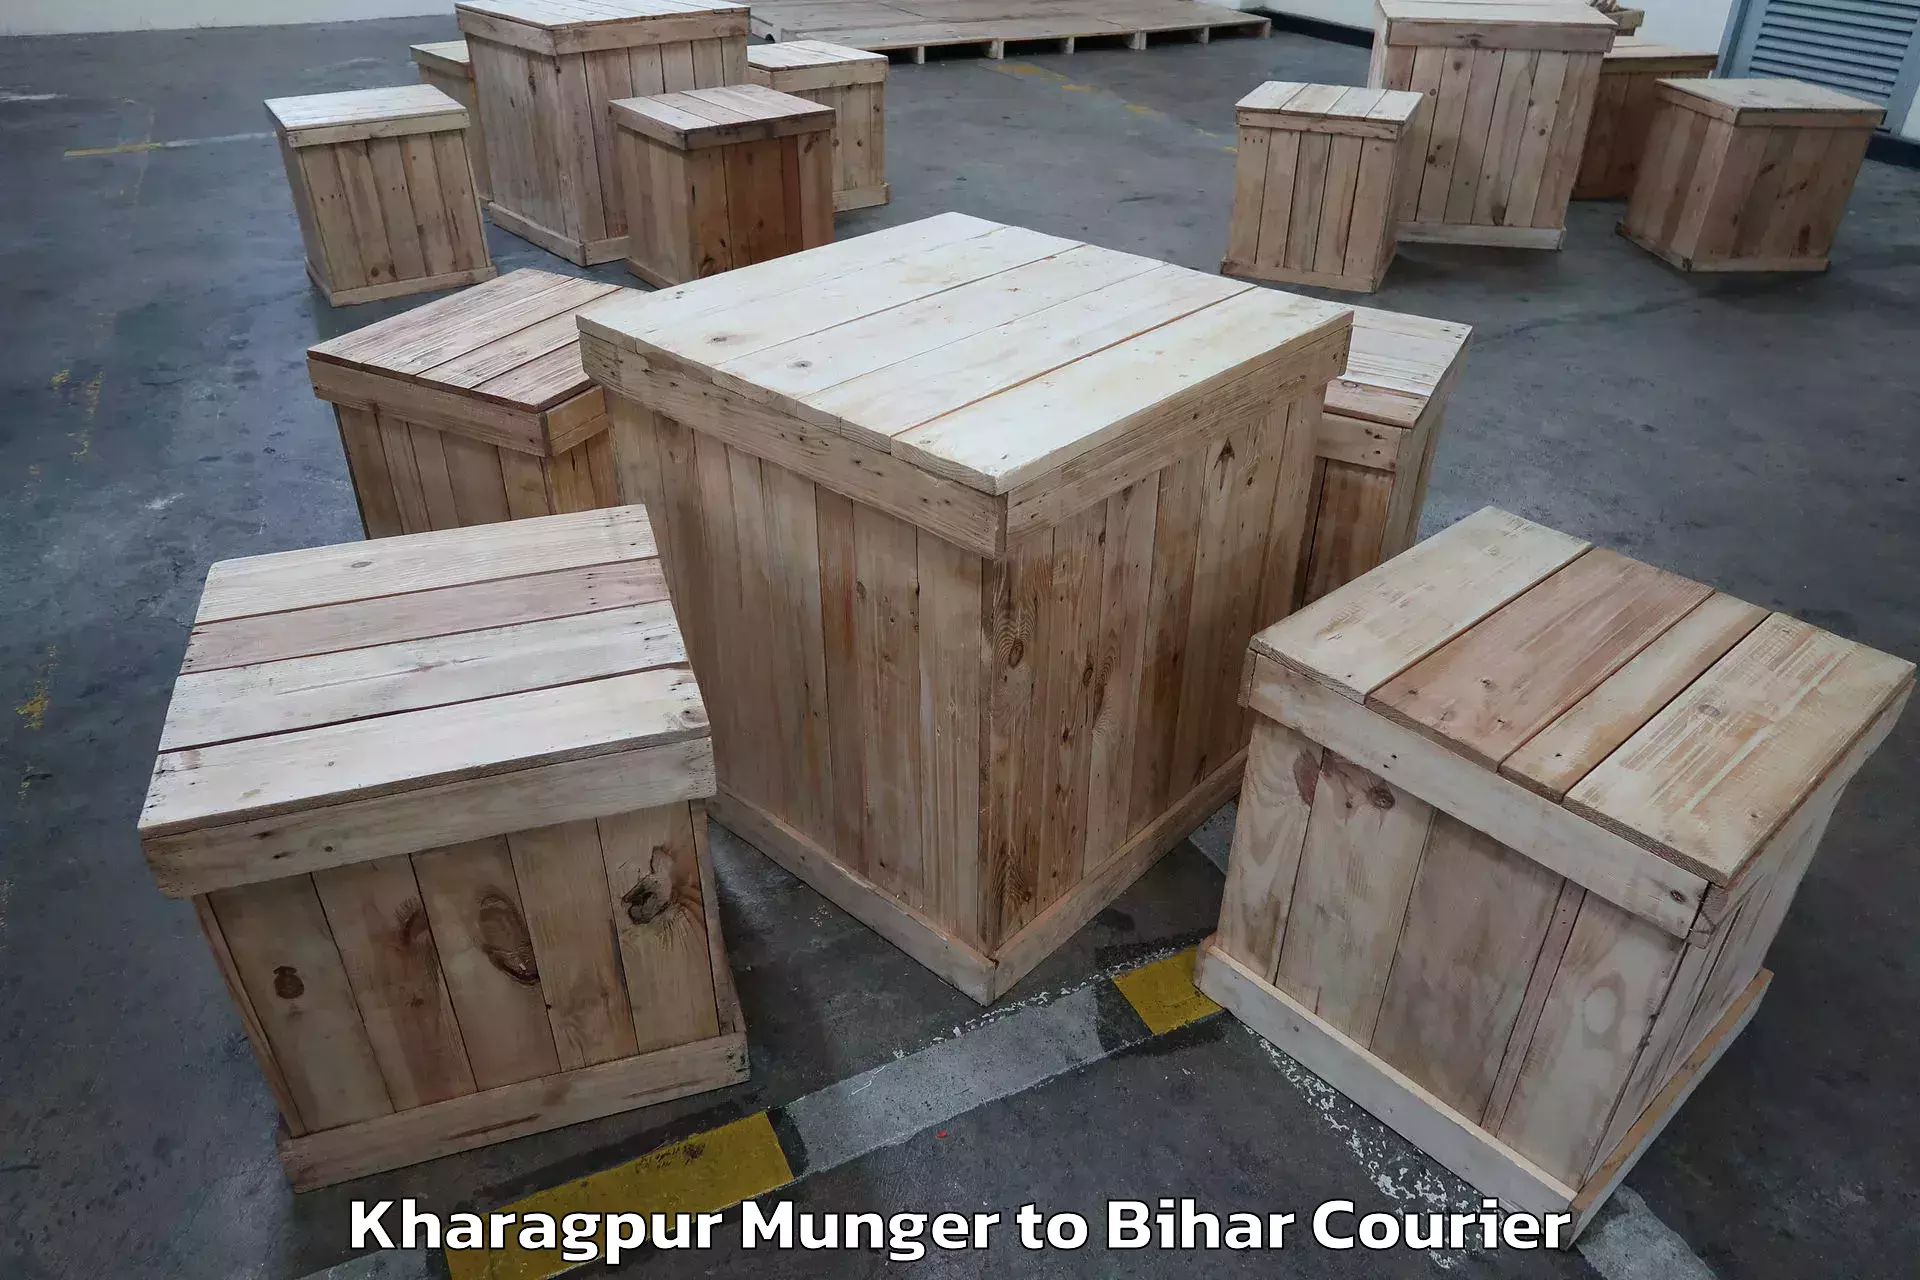 Furniture transport experts Kharagpur Munger to Sugauna